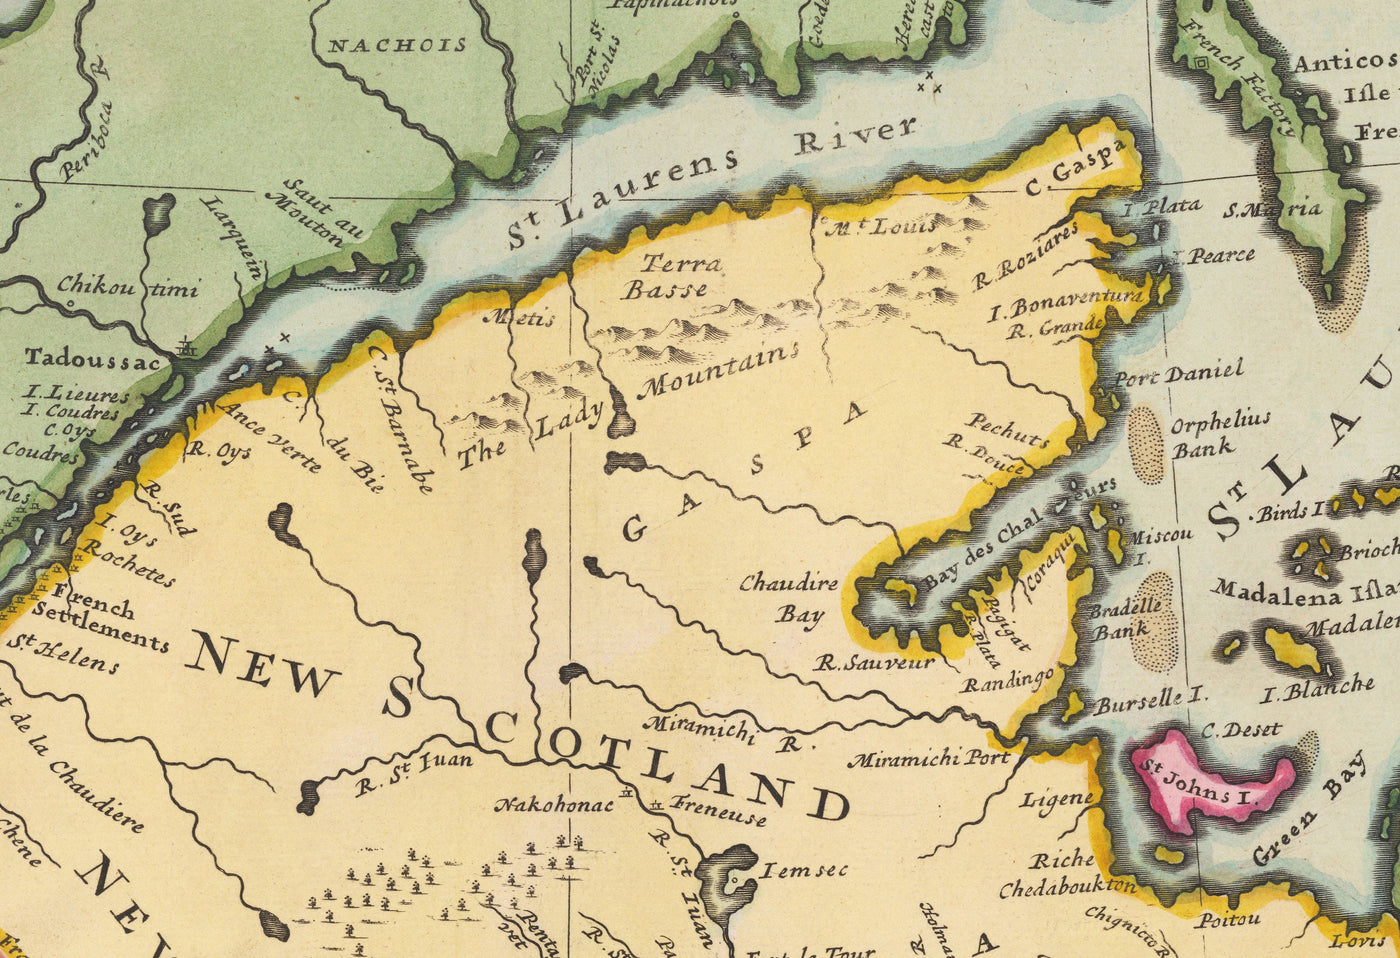 Alte Karte von Nordamerika 1715 von Herman Moll - New England, New Scotland, New York, Carolina, Französisch & dreizehn britische Kolonien